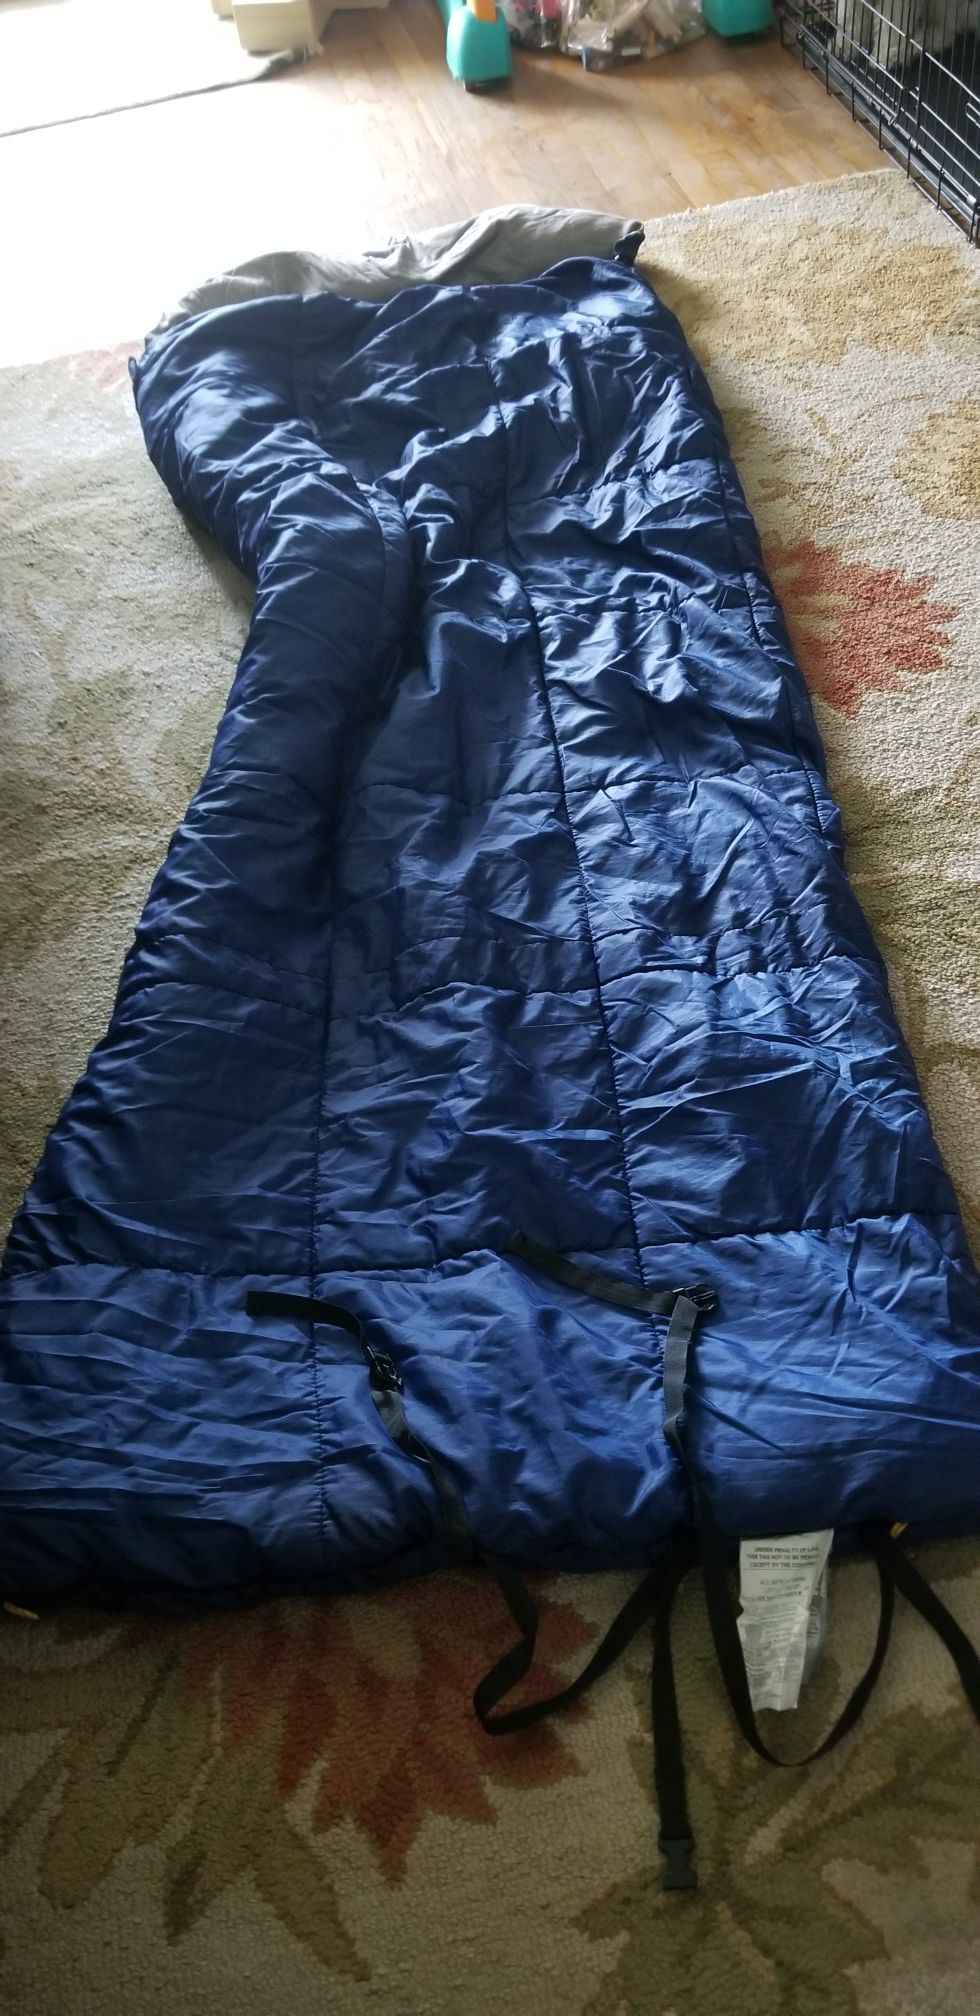 Ridgeway by kelty sleeping bag